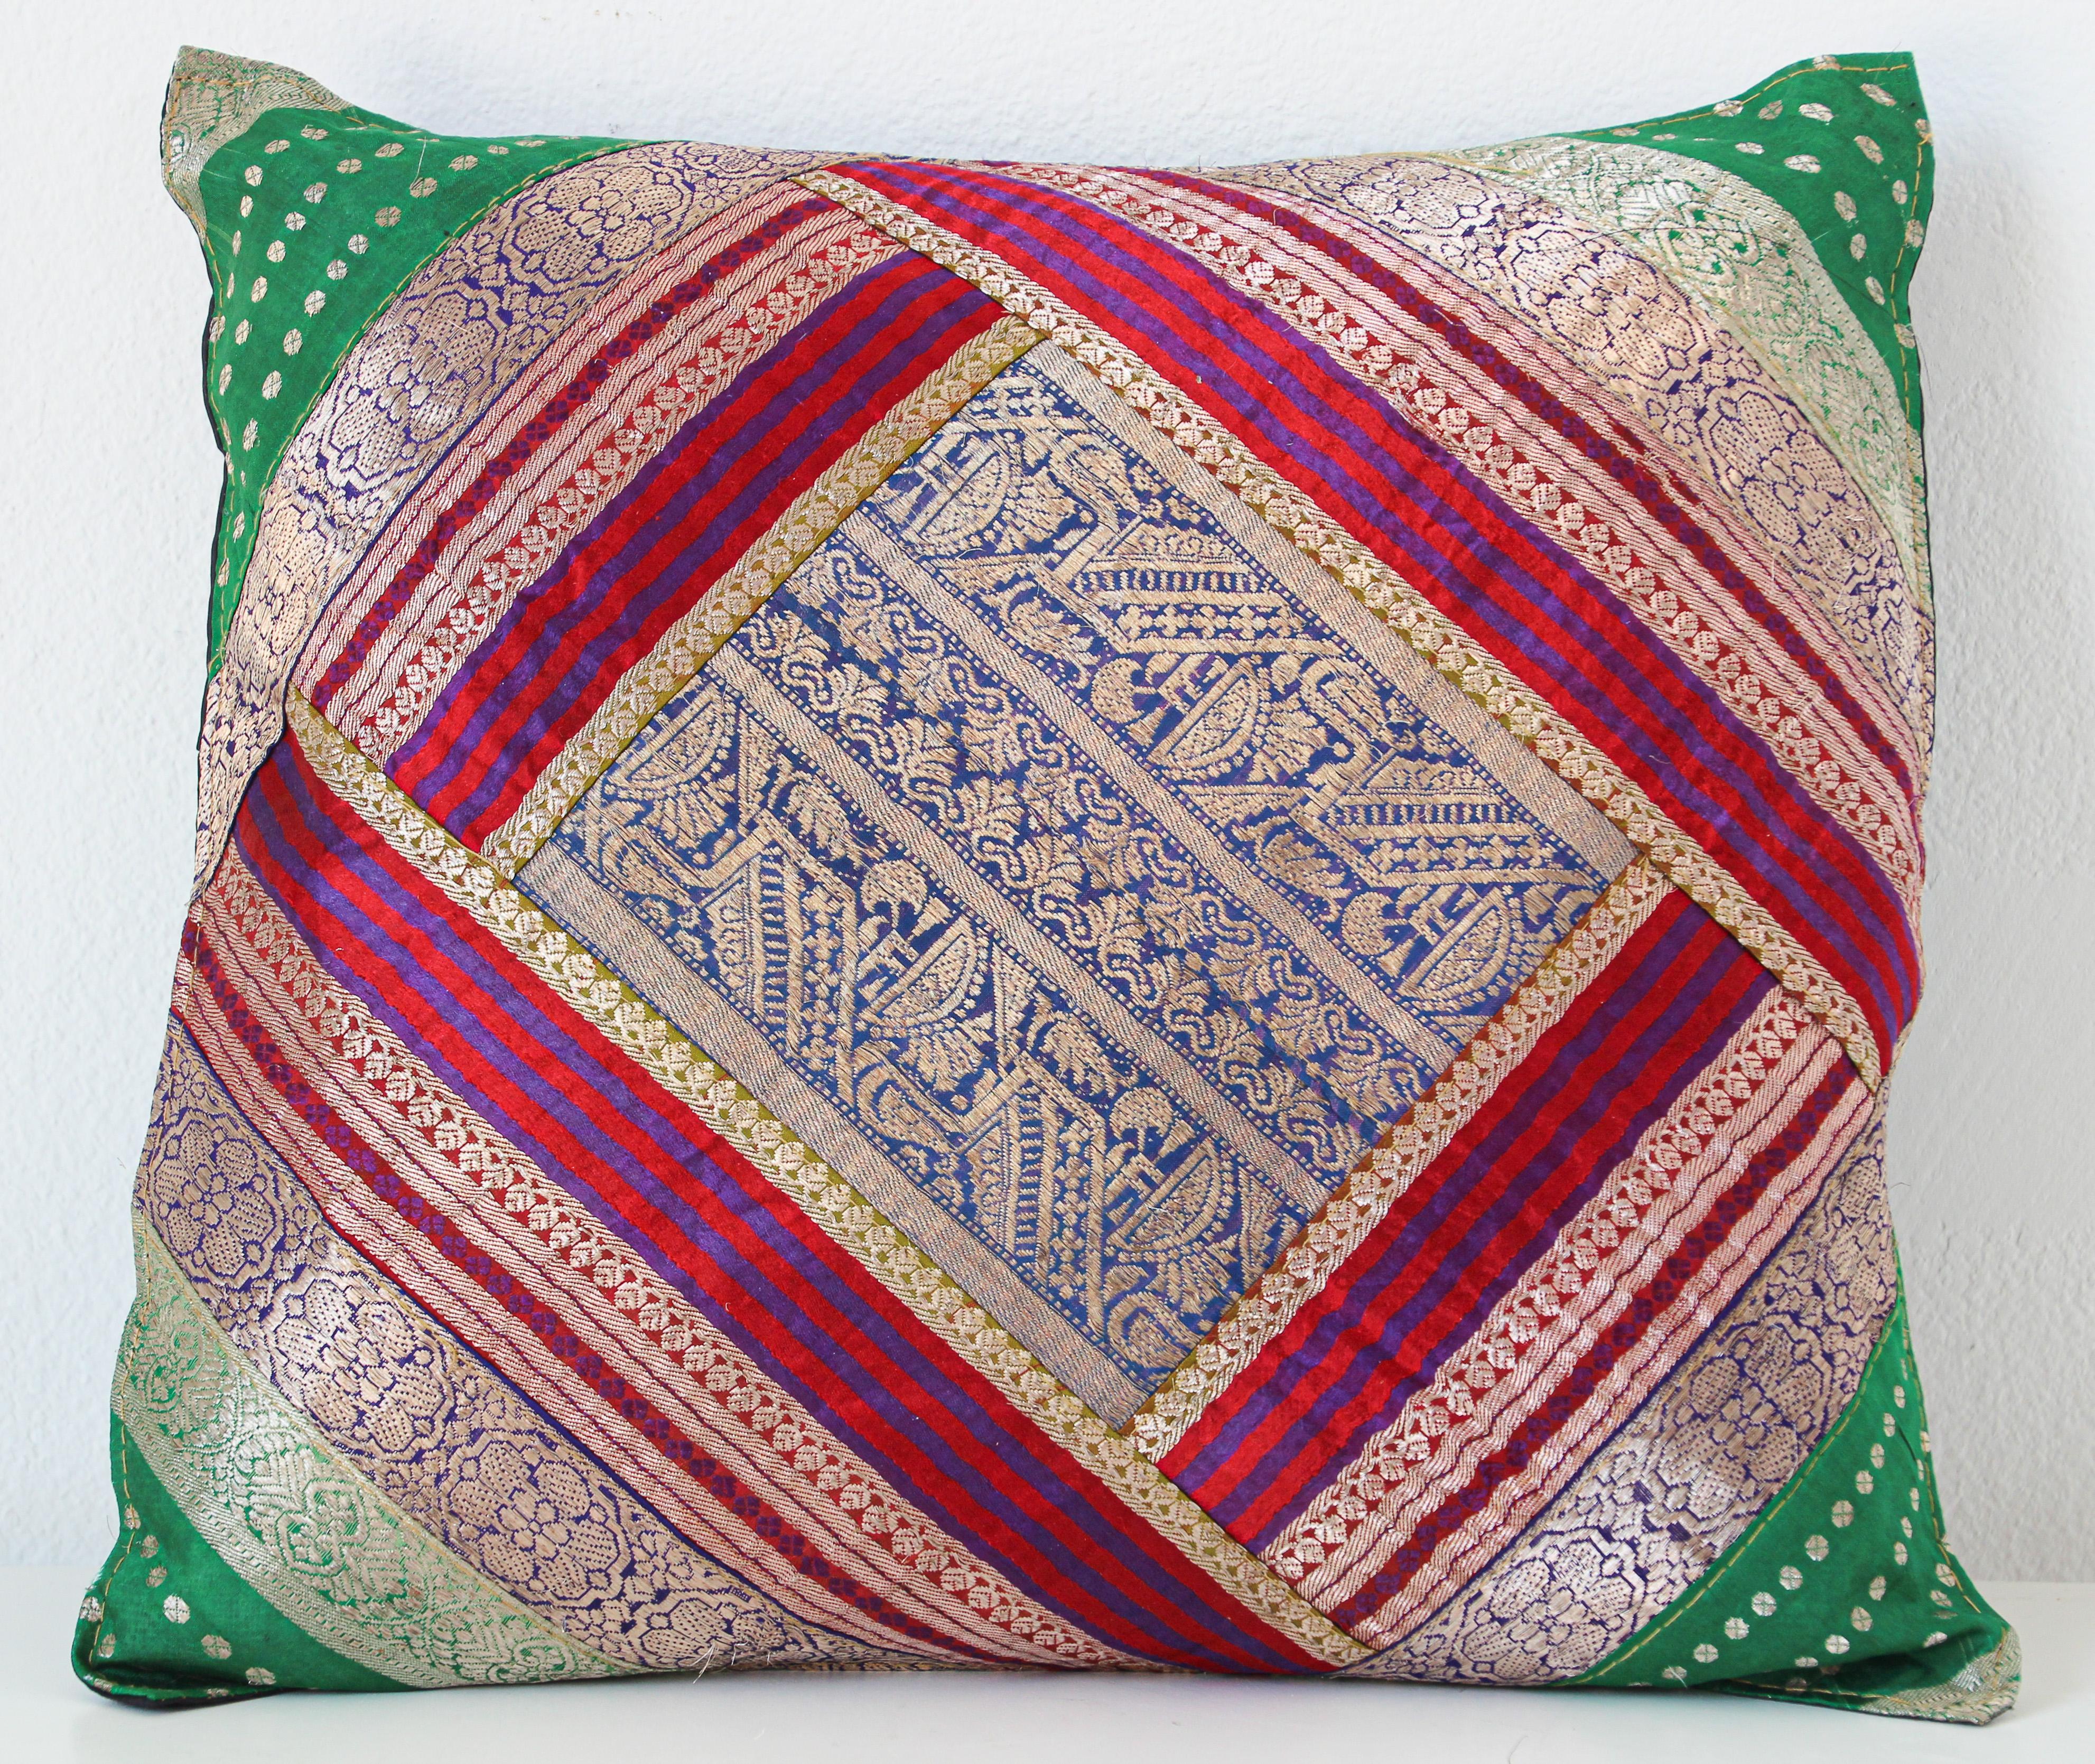 Coussin d'appoint décoratif fabriqué à partir de bordures de sari en soie vintage.
Coussin en soie unique en son genre dans les couleurs bleu, vert, or, vert, violet avec des bordures de saris en soie à fils métalliques.
Fabriqué à la main en